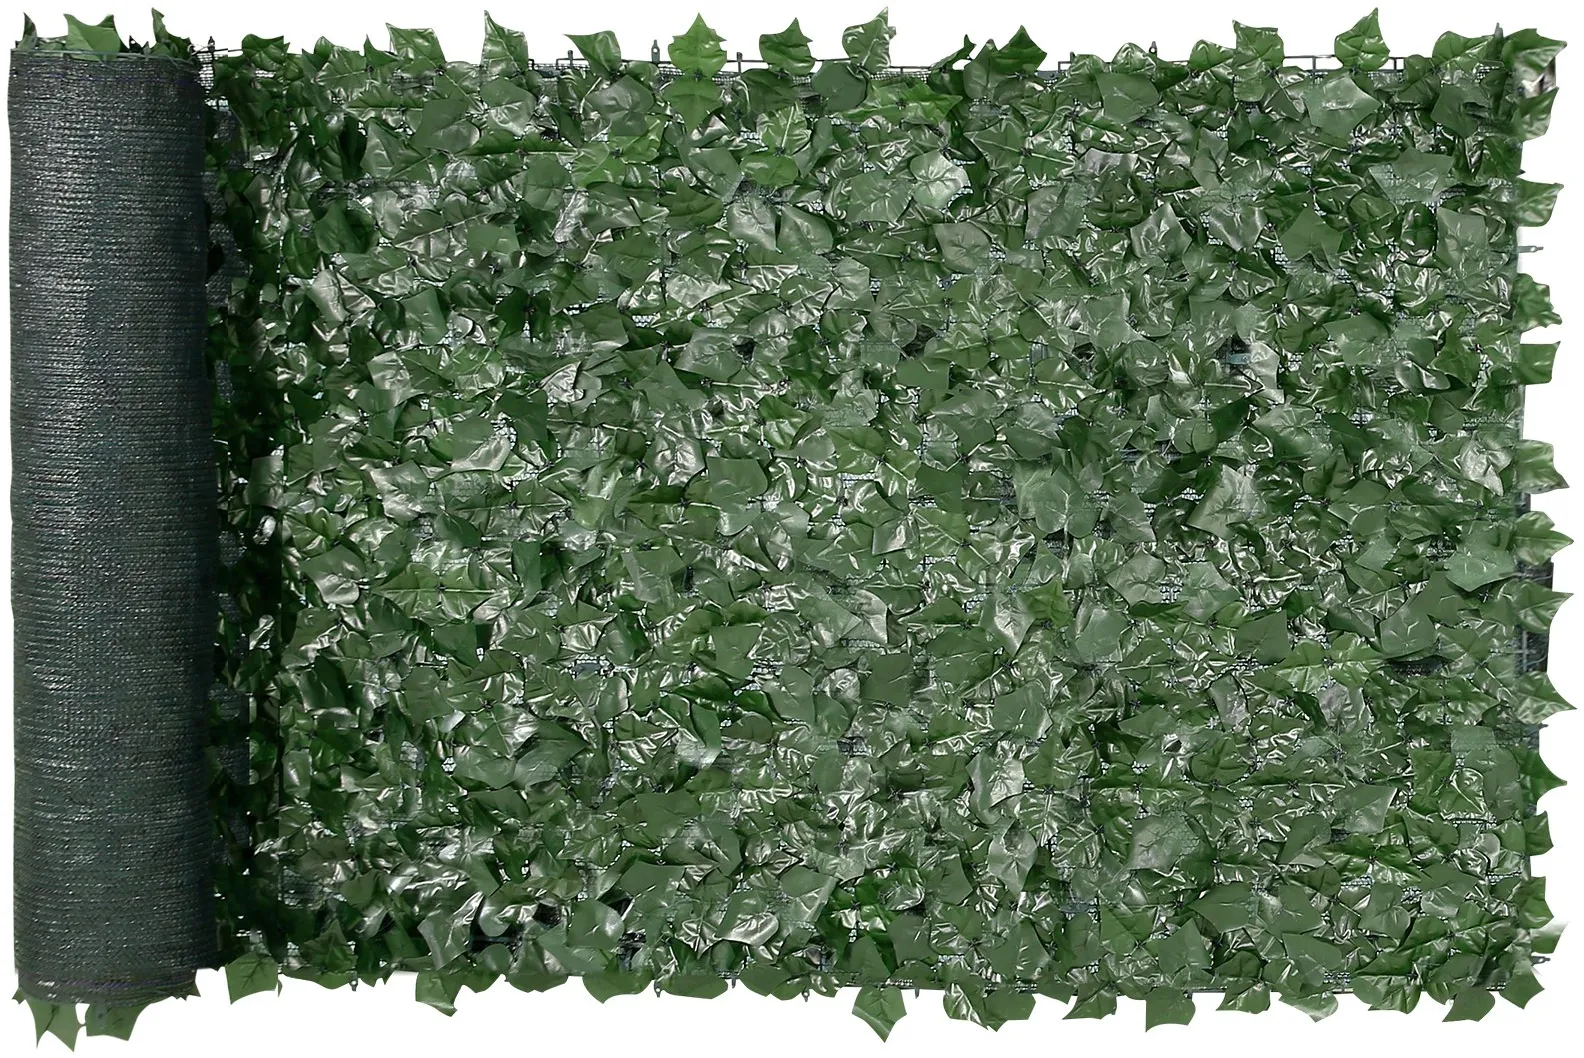 VEVOR Sichtschutzzaun 99x249cm künstlicher grüner Sichtschutz Efeuzaun mit Netzgeweberückseite und verstärkter Verbindung künstliche Hecken mit Weinblättern als Dekoration für Garten und Hof